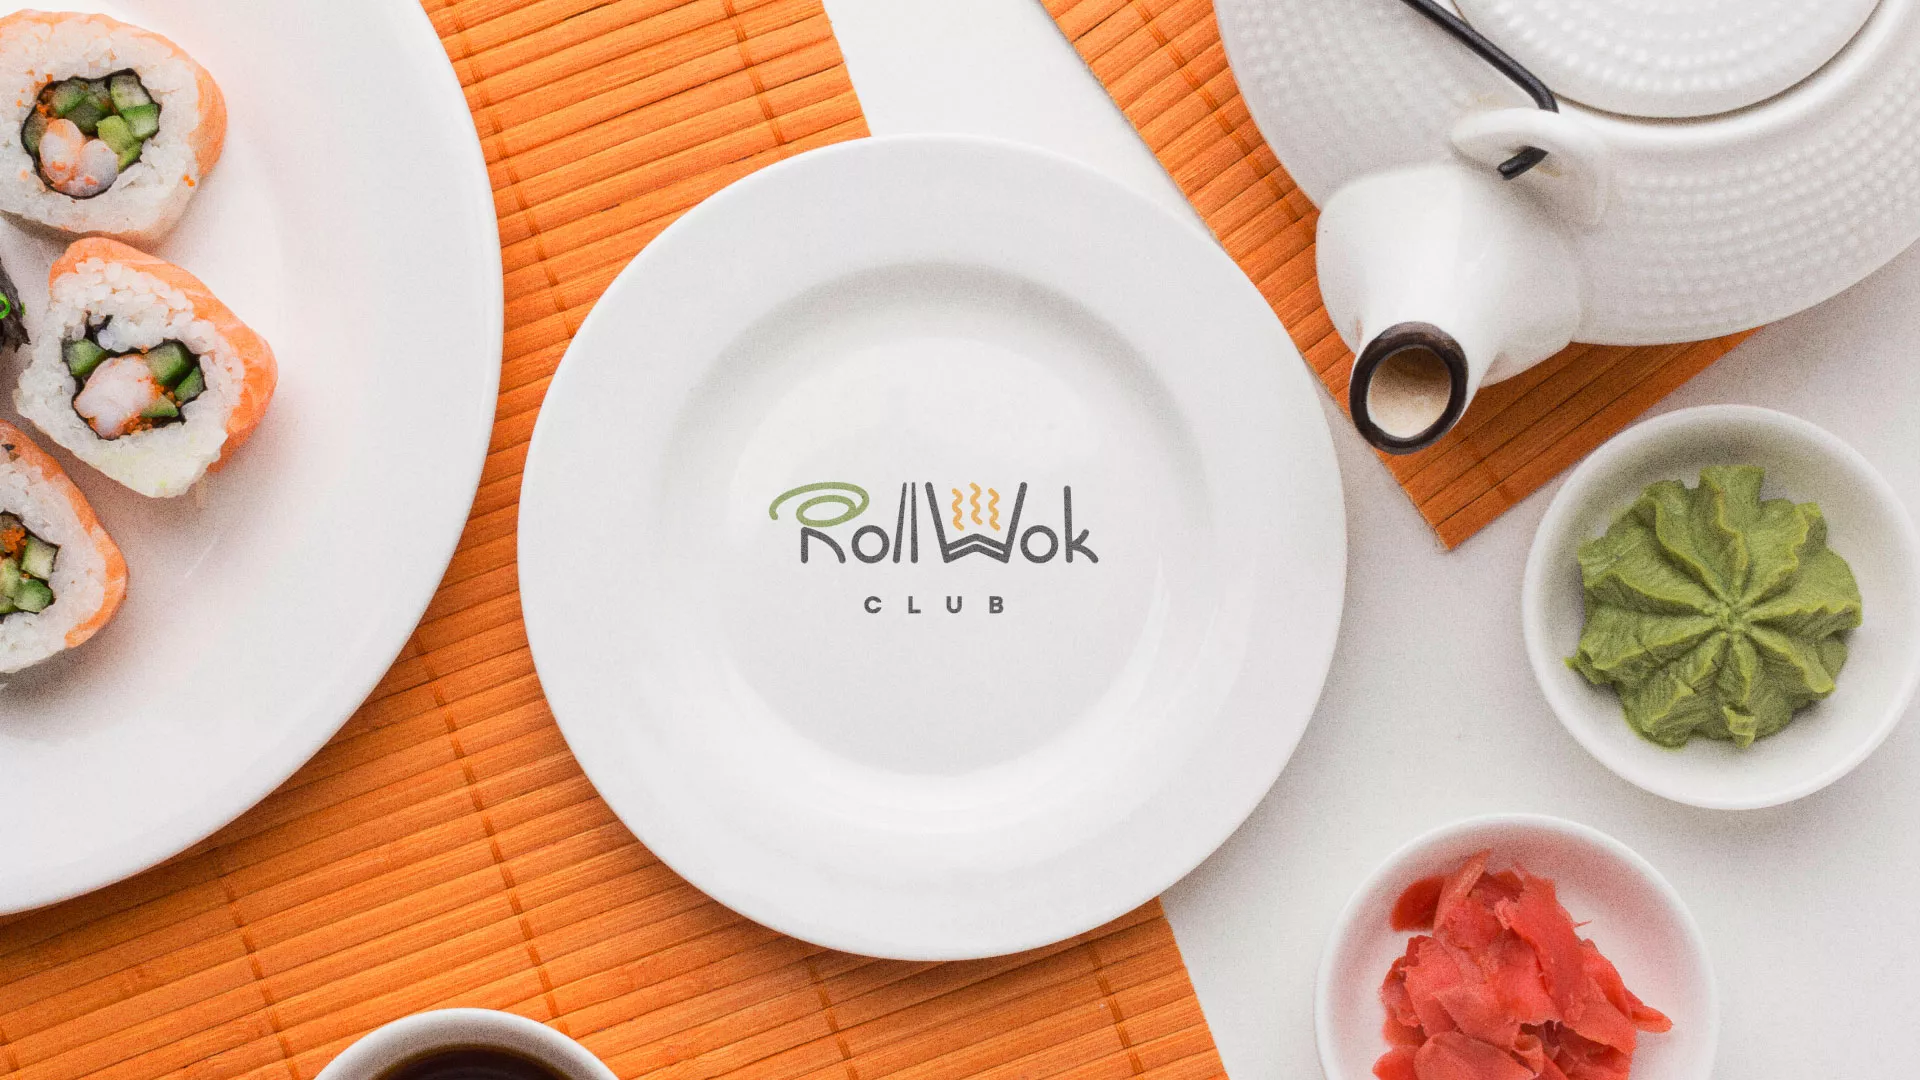 Разработка логотипа и фирменного стиля суши-бара «Roll Wok Club» в Ветлуге